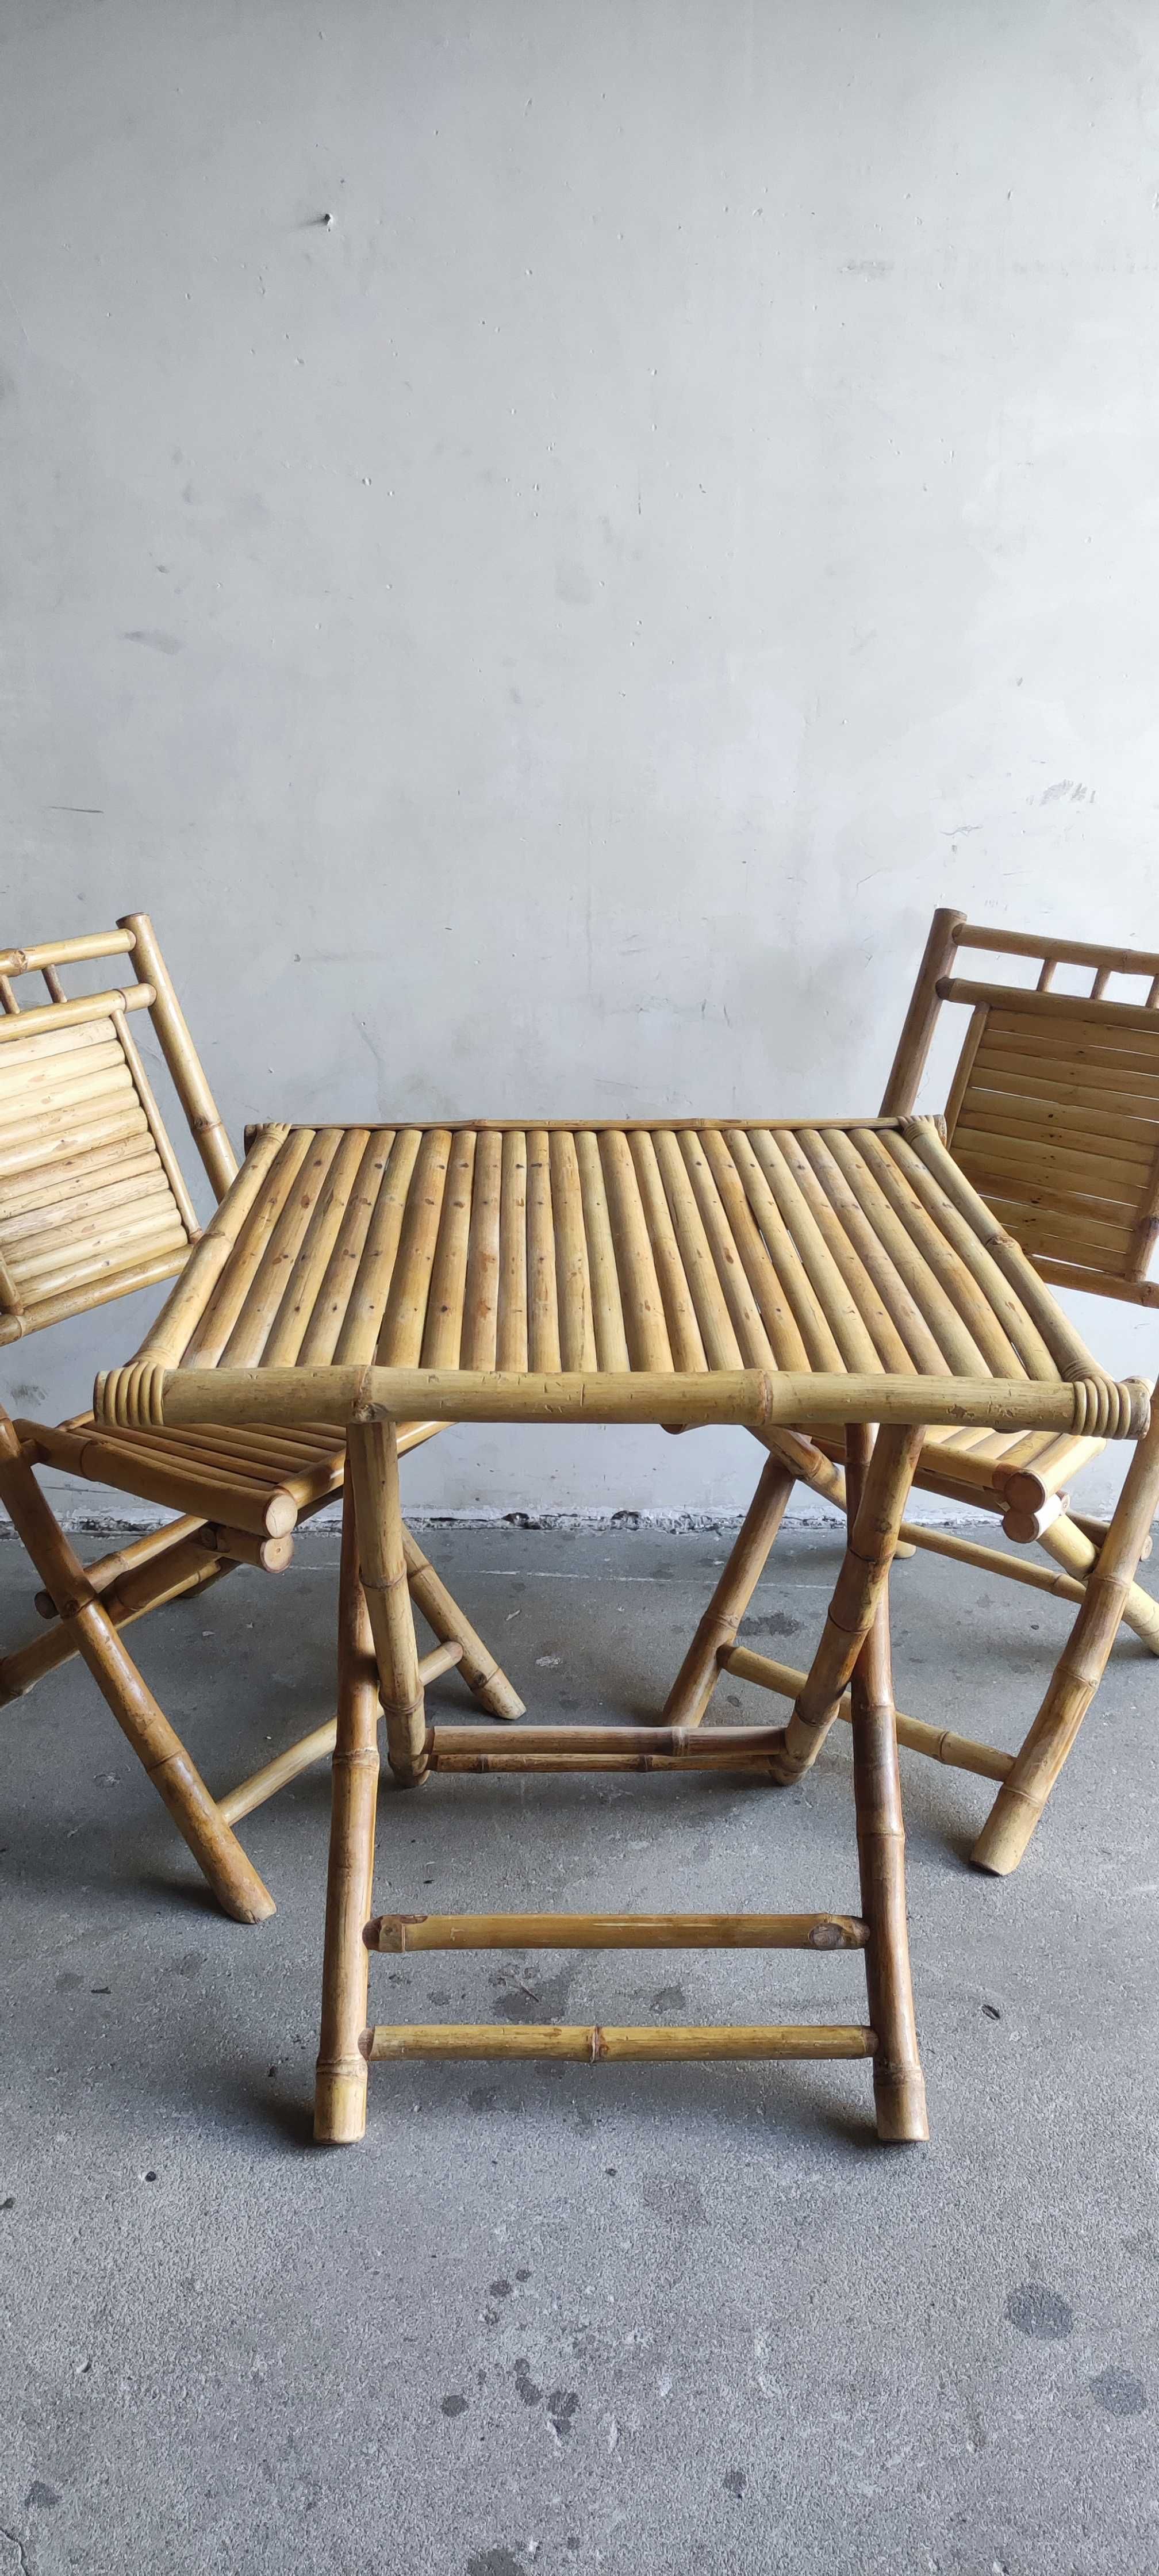 Stół i krzesła z bambusa, zestaw mebli składanych